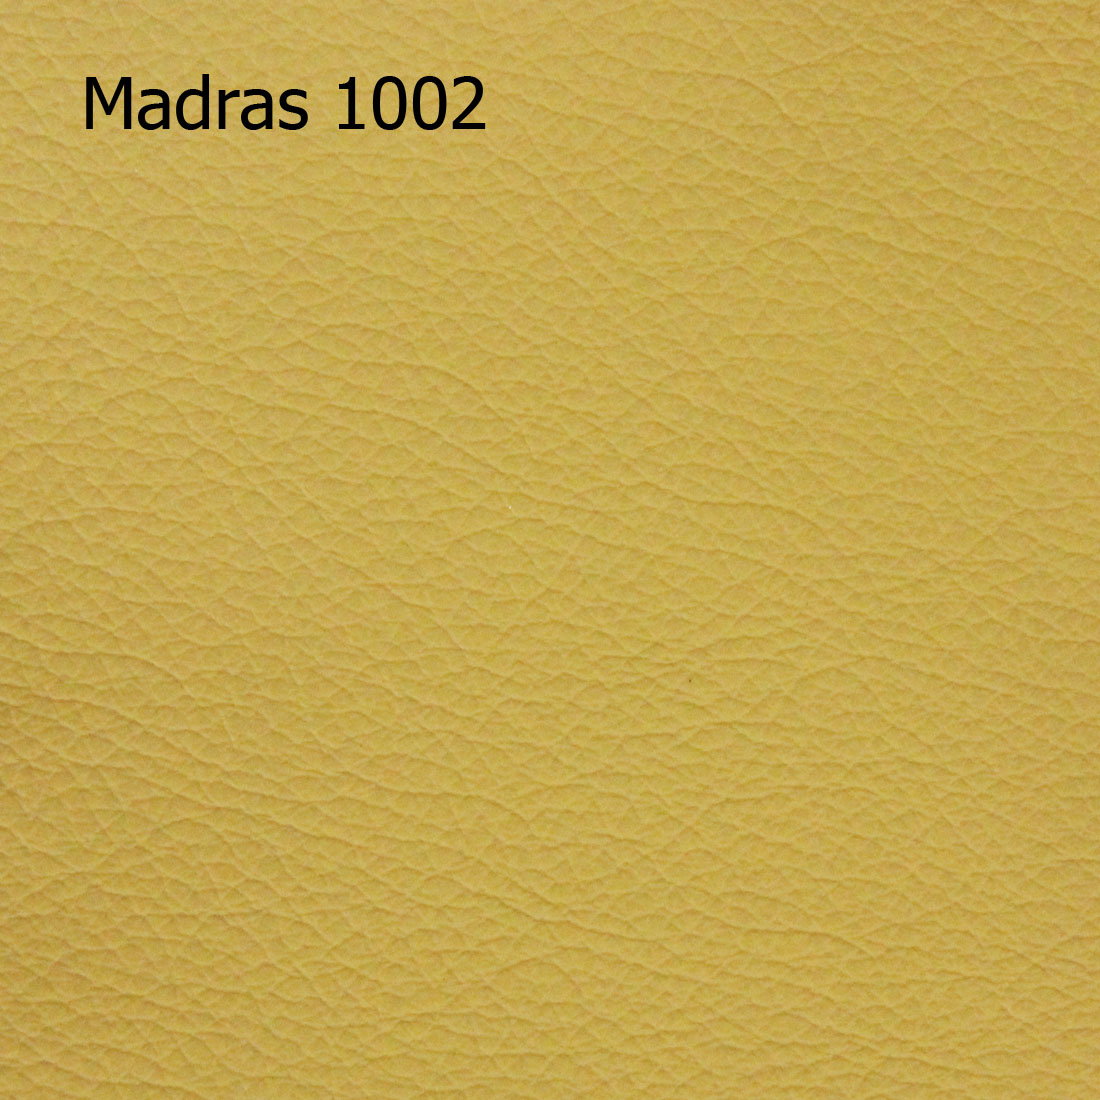 Madras 1002